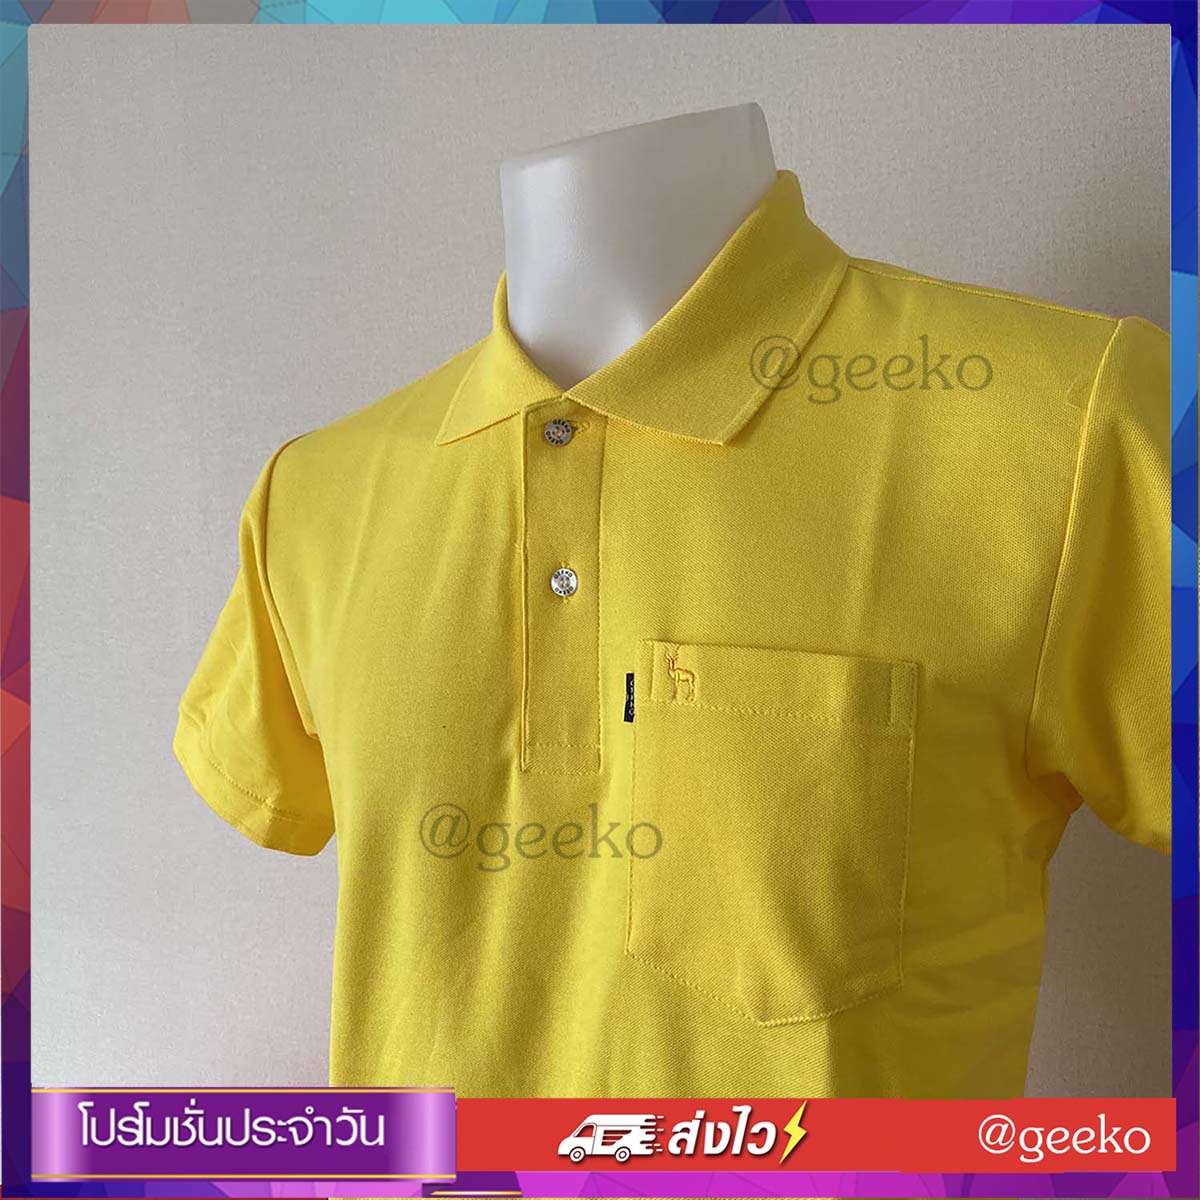 เสื้อโปโล สีเหลืองบลาซิล เนื้อผ้า TC นุ่มสวมใส่สบาย จากโรงงานผลิตเสื้อโปโลโดยตรง มีบริการส่งแบบเก็บเงินปลายทาง